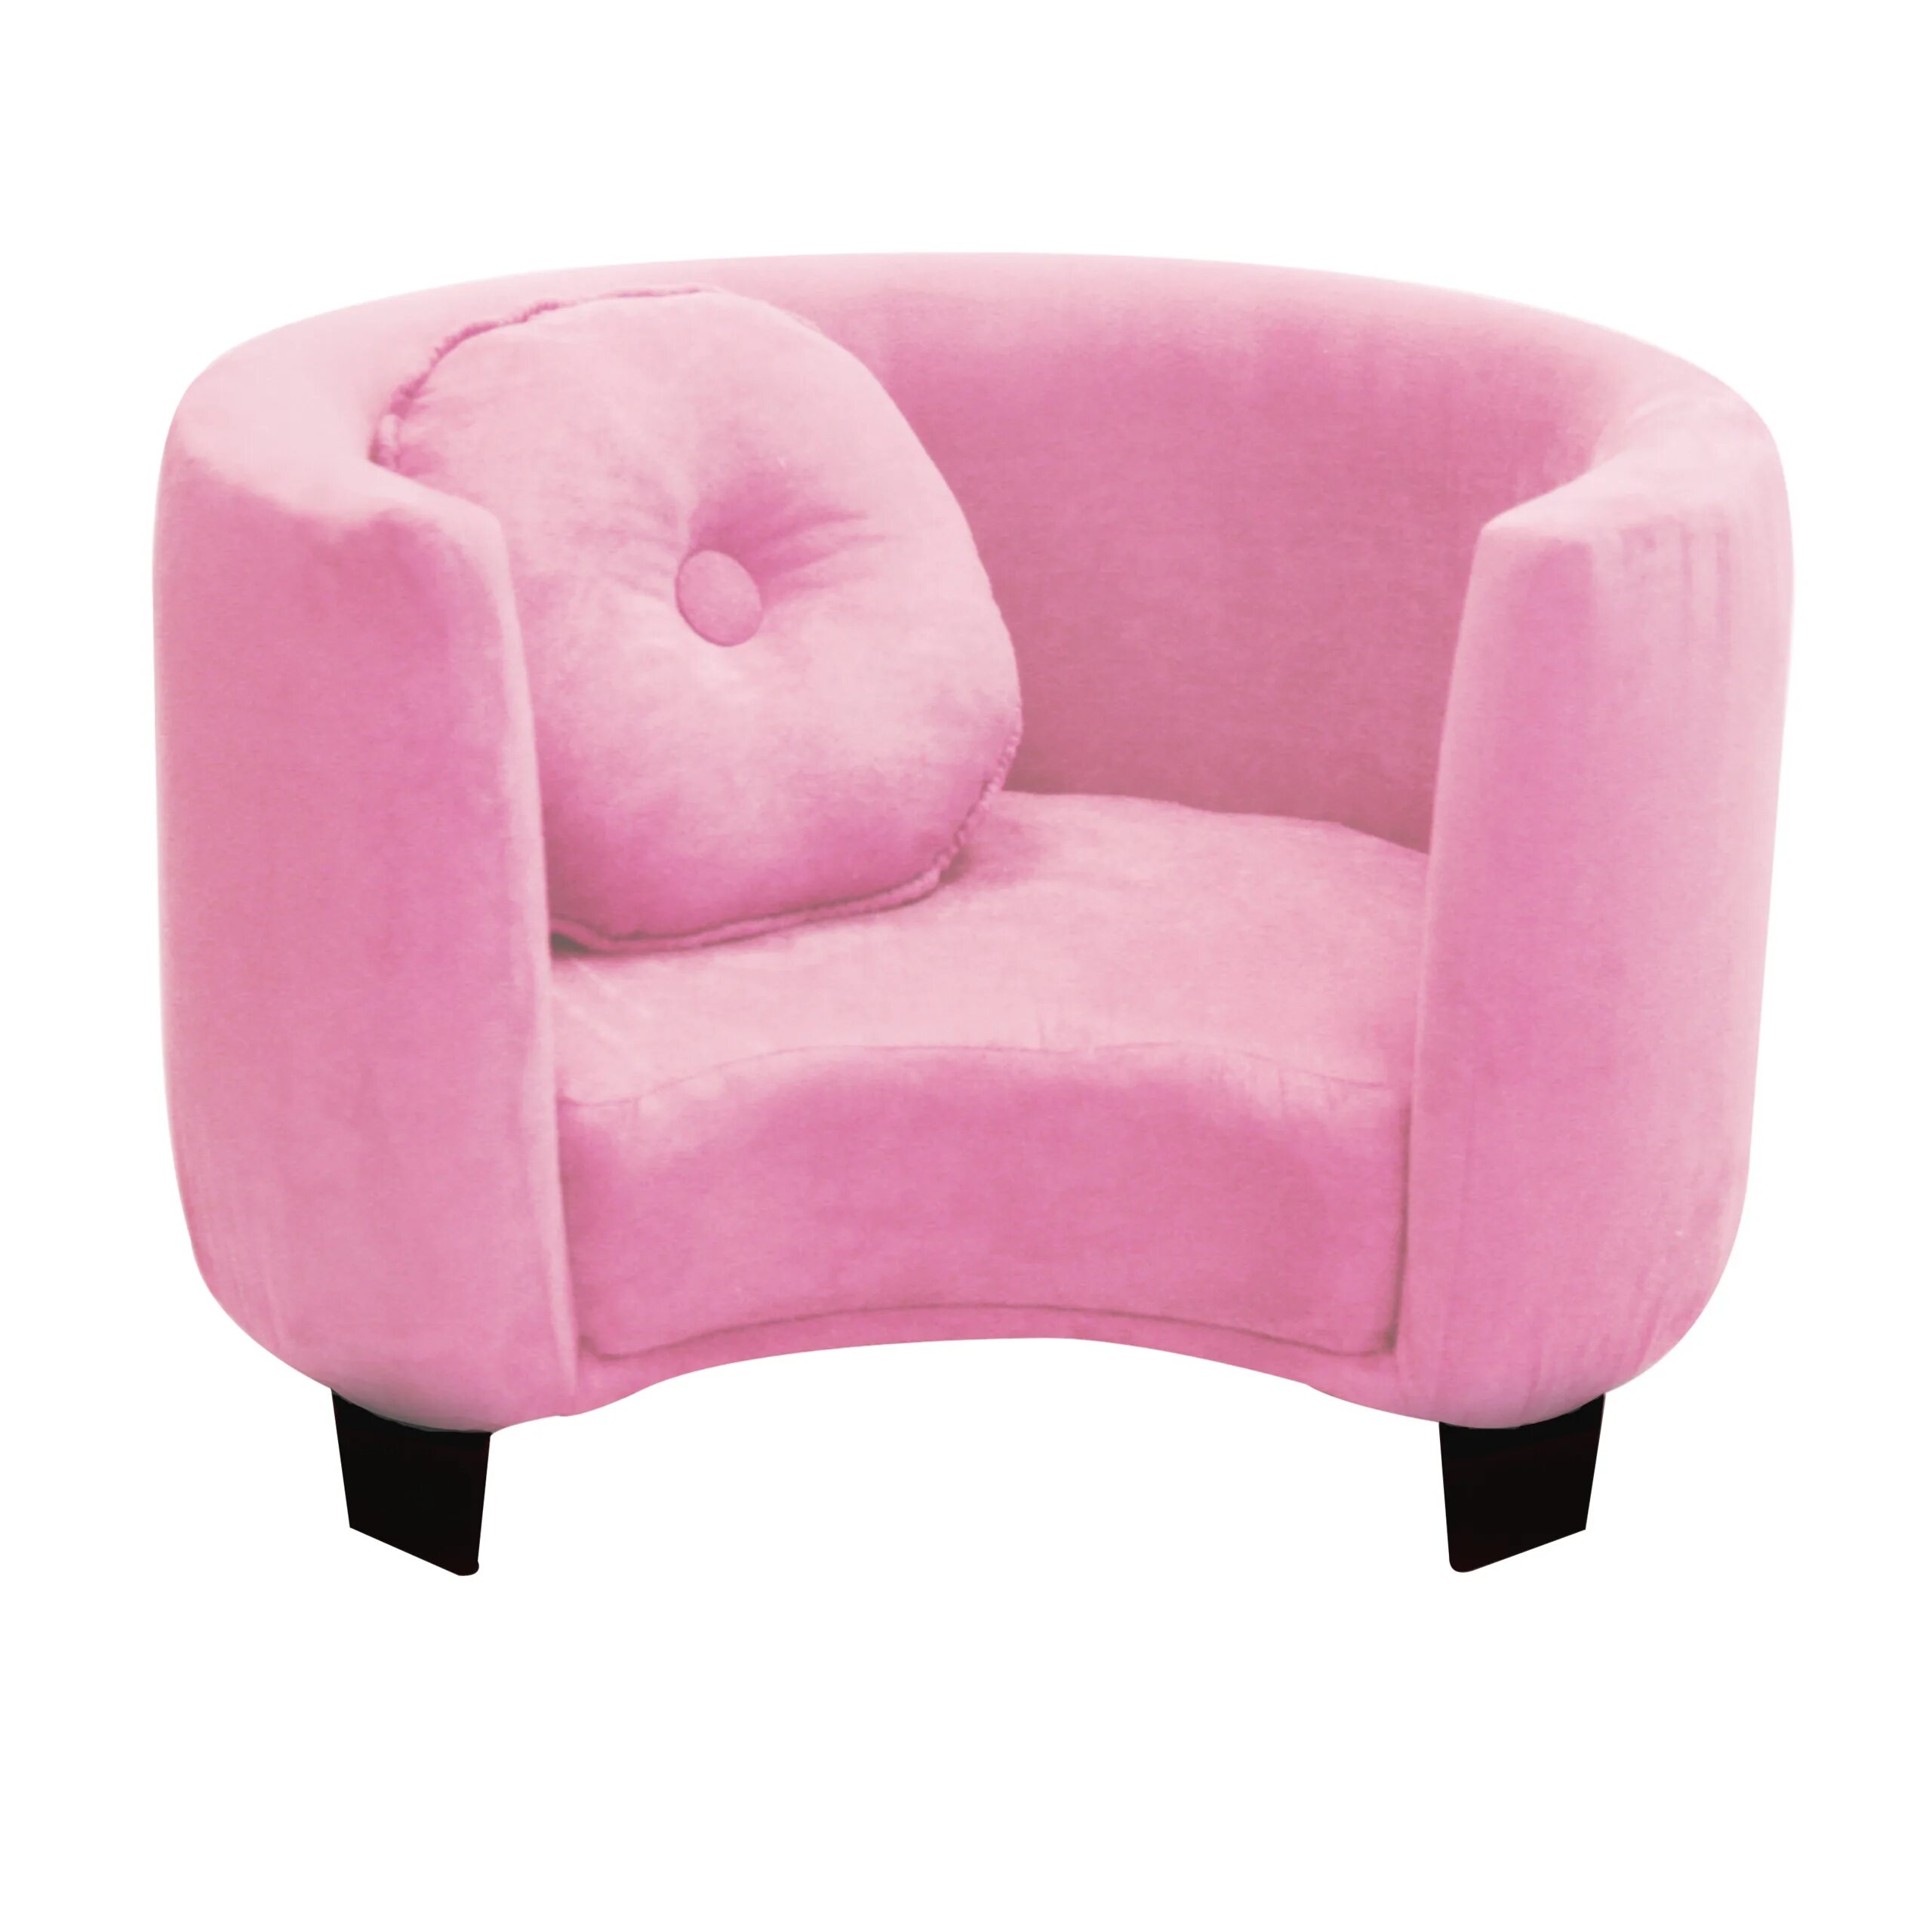 Креслице обессилить. Маленькое кресло. Розовое кресло. Маленькое кресло для ребенка. Кресло для девочки в комнату.